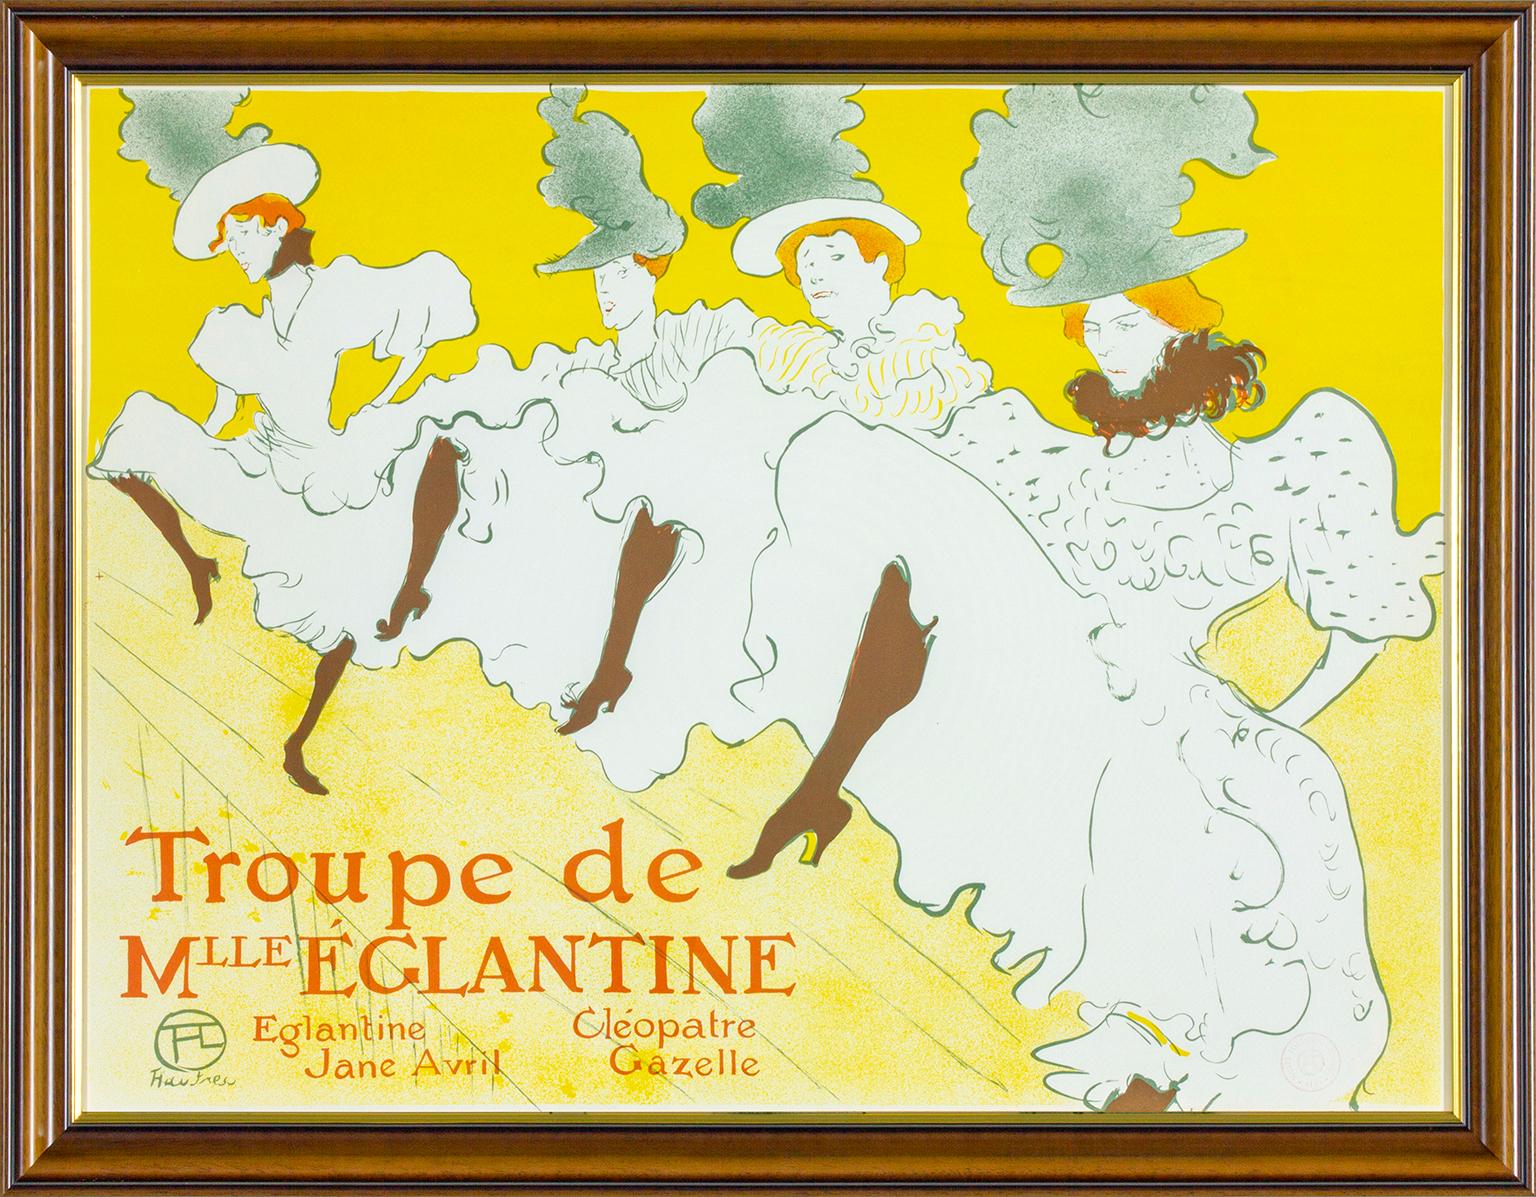 Henri de Toulouse-Lautrec Figurative Print - "Troupe de M'lle Eglantine" 1974 Albi Museum authorized limited edition poster